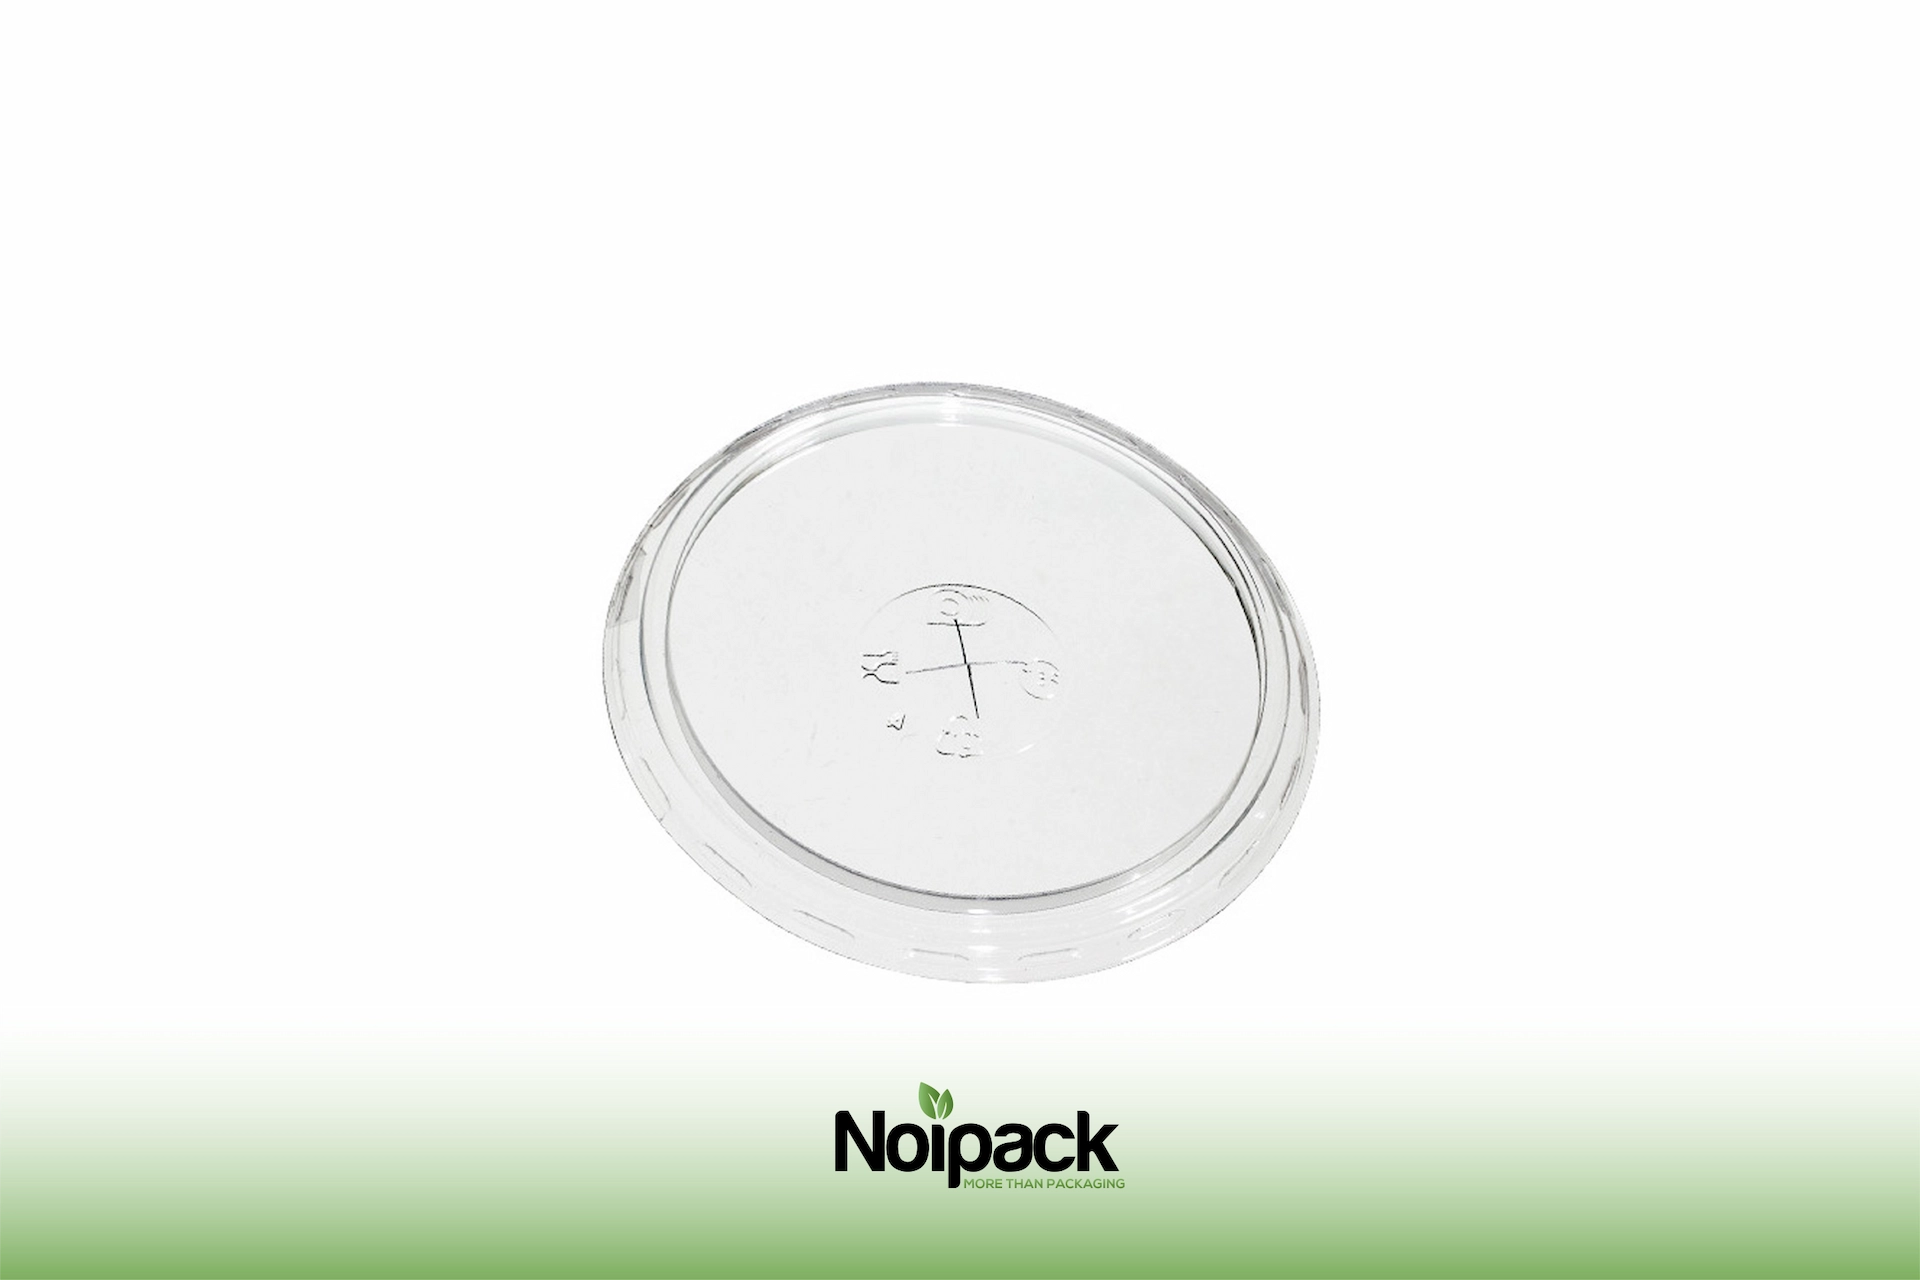 Noipack flat lid 500ml rPET